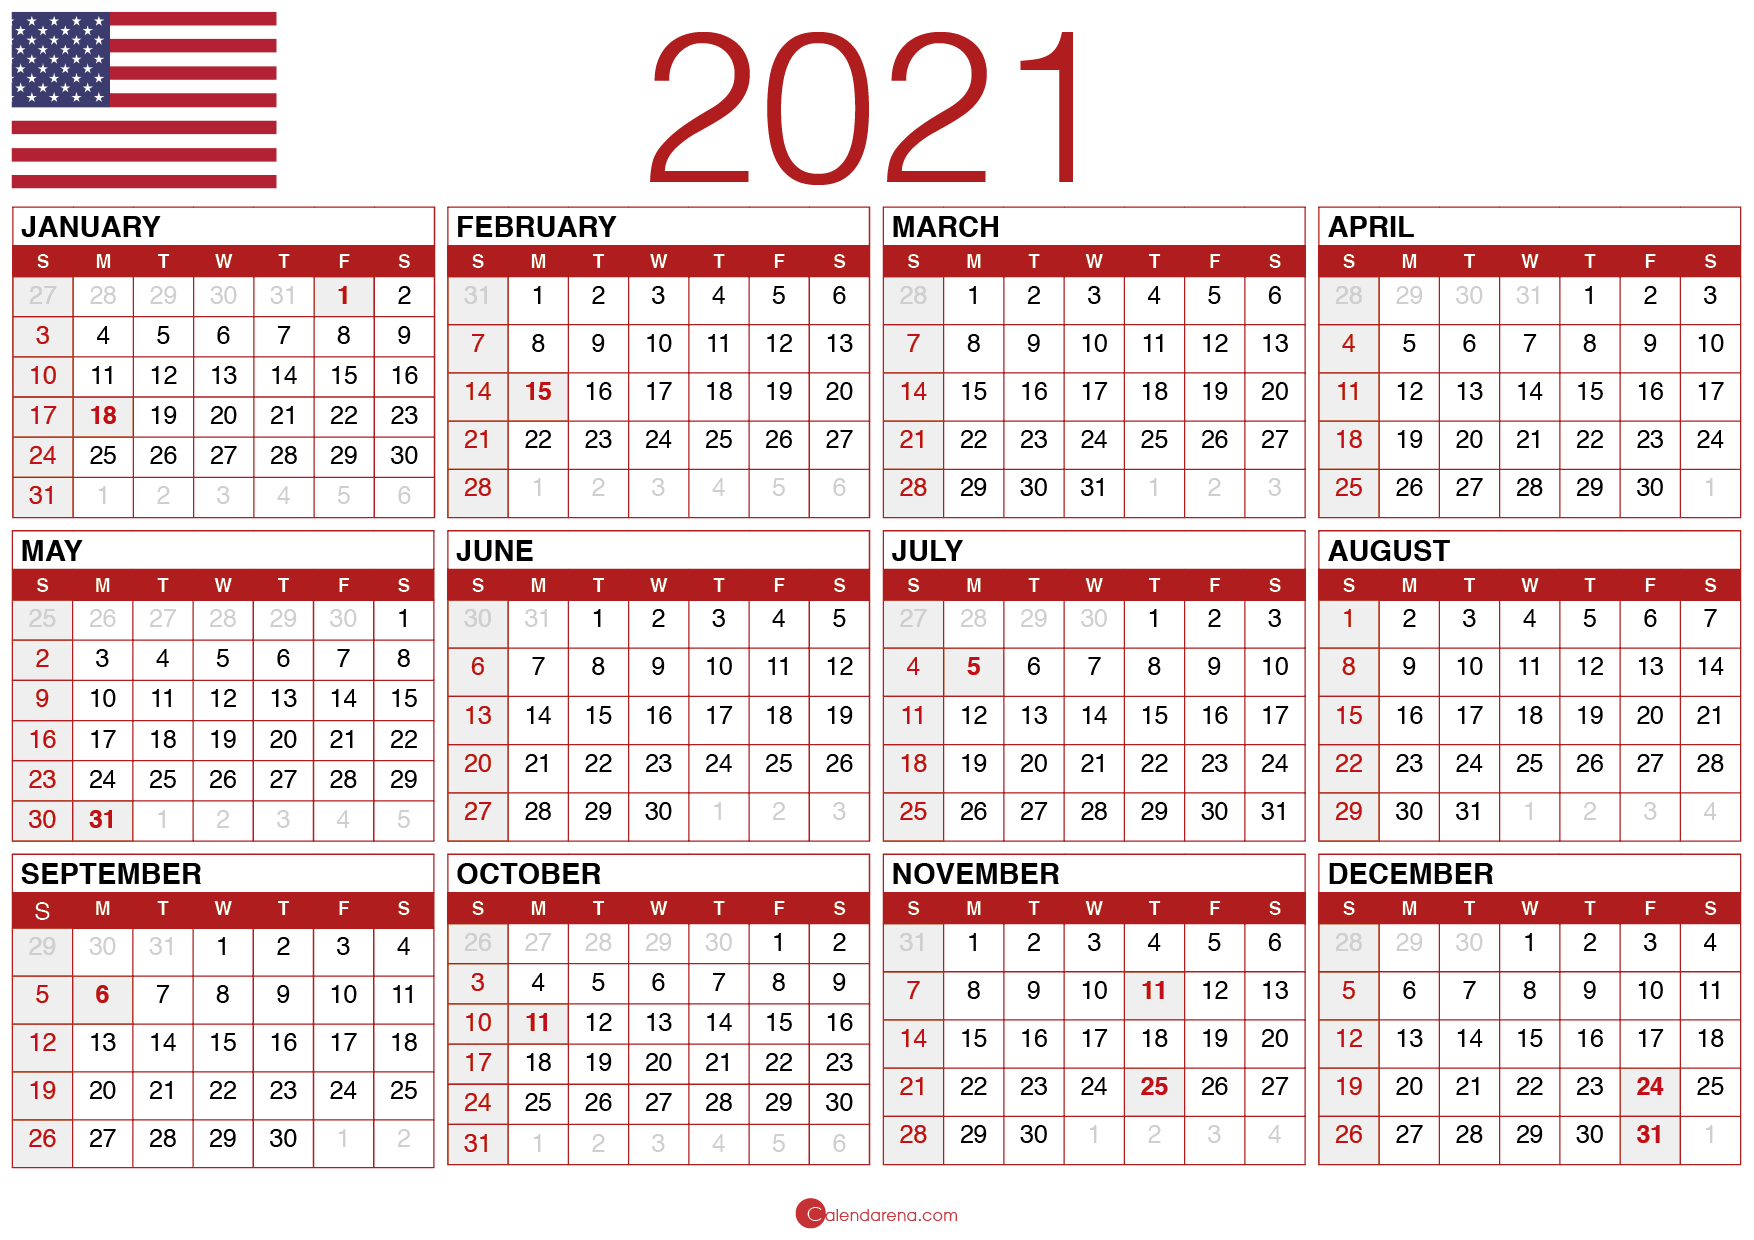 Au 47 Grunner Til 2021 Calendar With Federal Holidays Printable A